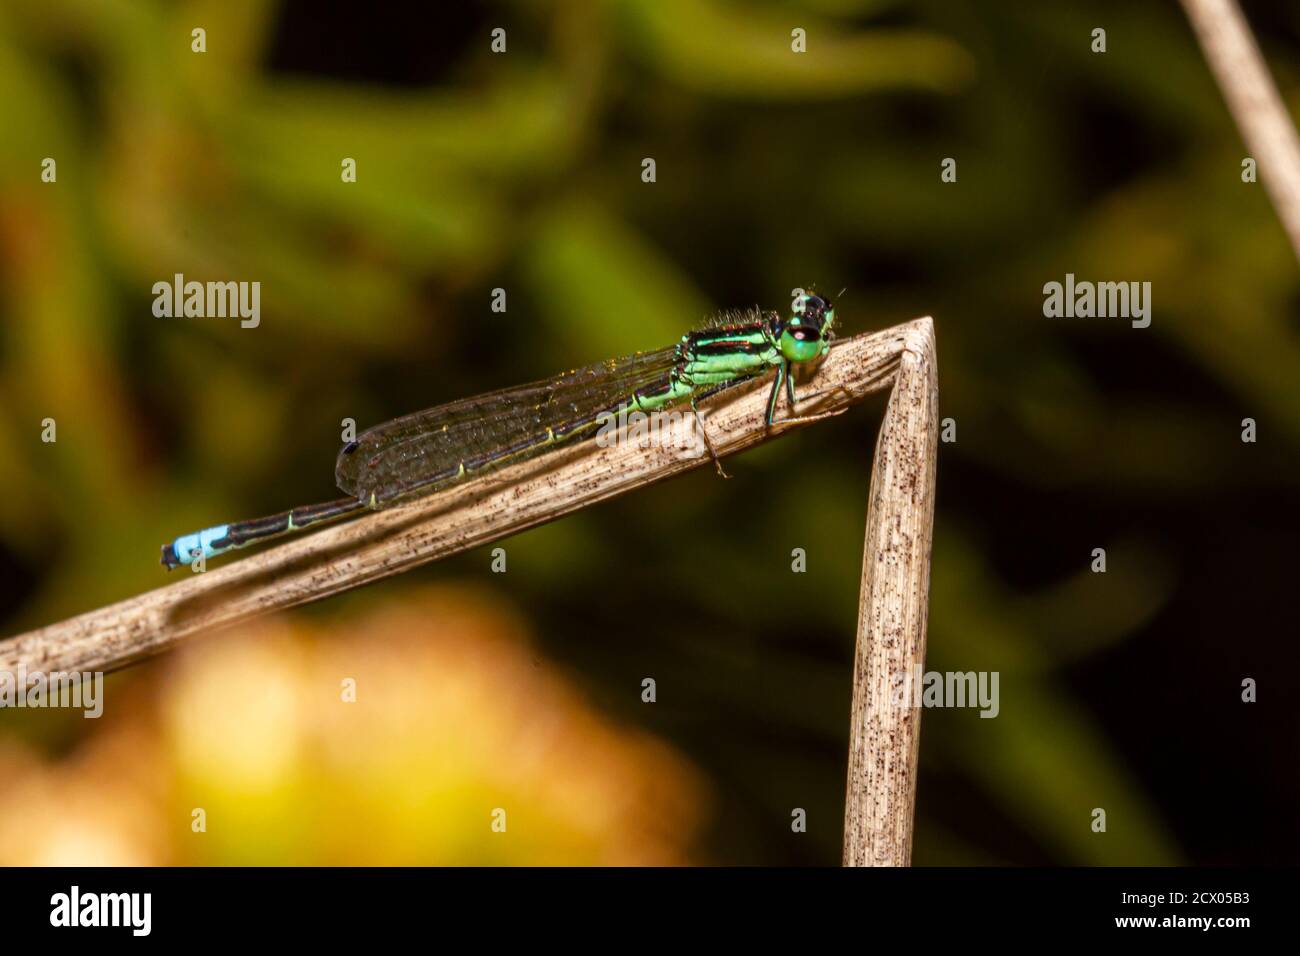 Primo piano immagine macro isolata di una posita di Ischnura (fragile forktail) una mosca che misura circa 25 mm ed è originaria degli Stati Uniti orientali. Questo verde Foto Stock